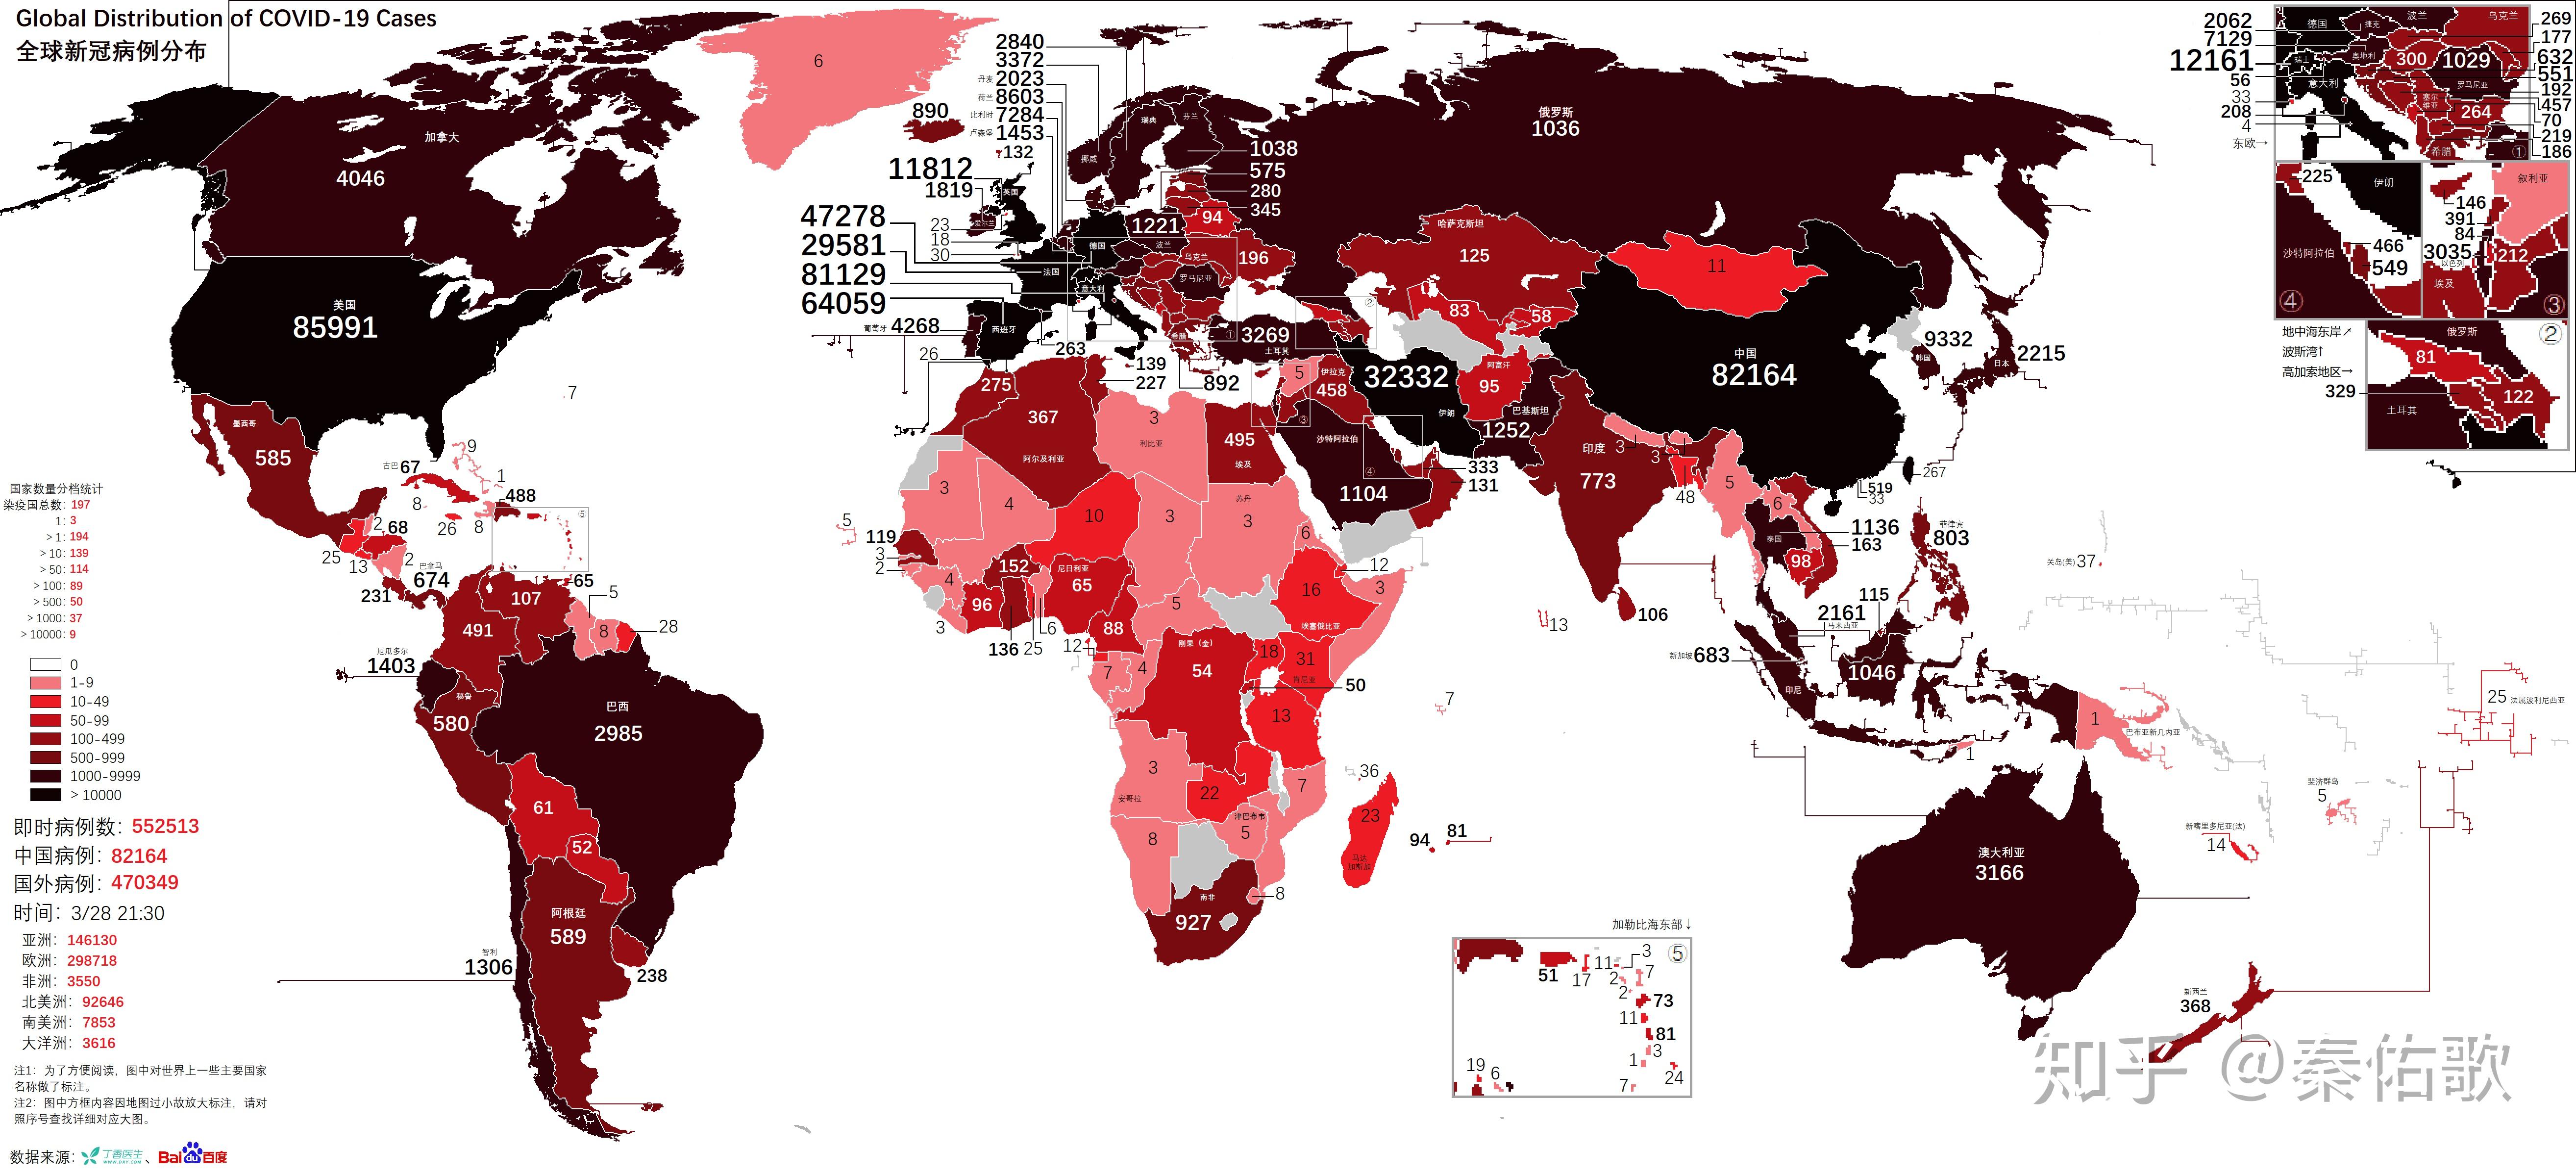 新型冠状病毒肺炎疫情分布图(每日更新)(含中国/全球/痊愈患者分布)